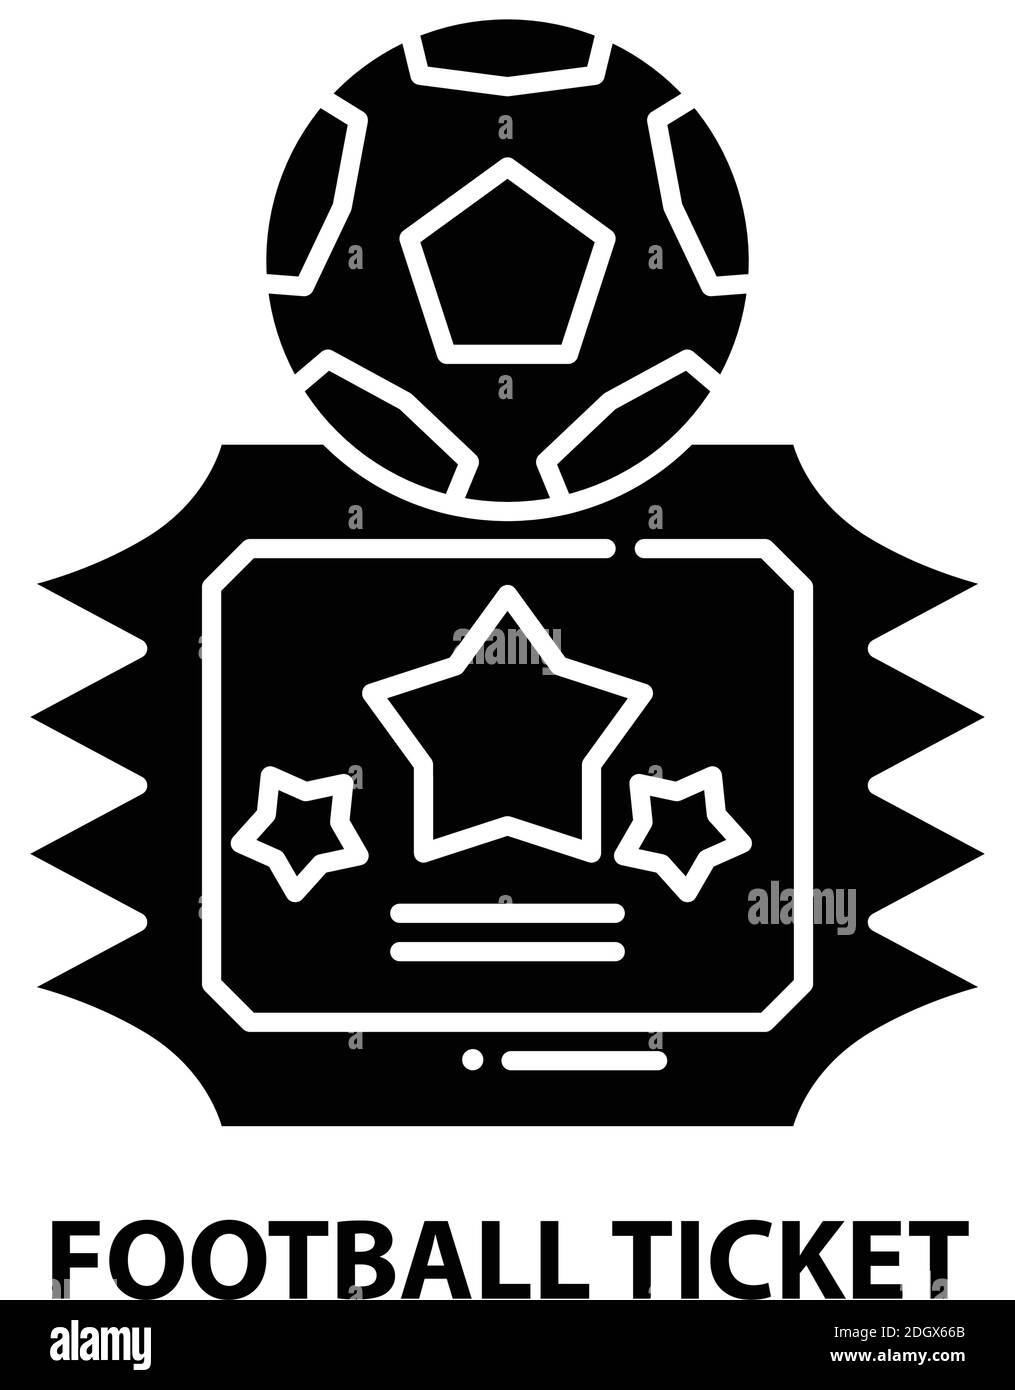 Fußballticket-Symbol, schwarzes Vektorzeichen mit editierbaren Striche, Konzeptdarstellung Stock Vektor